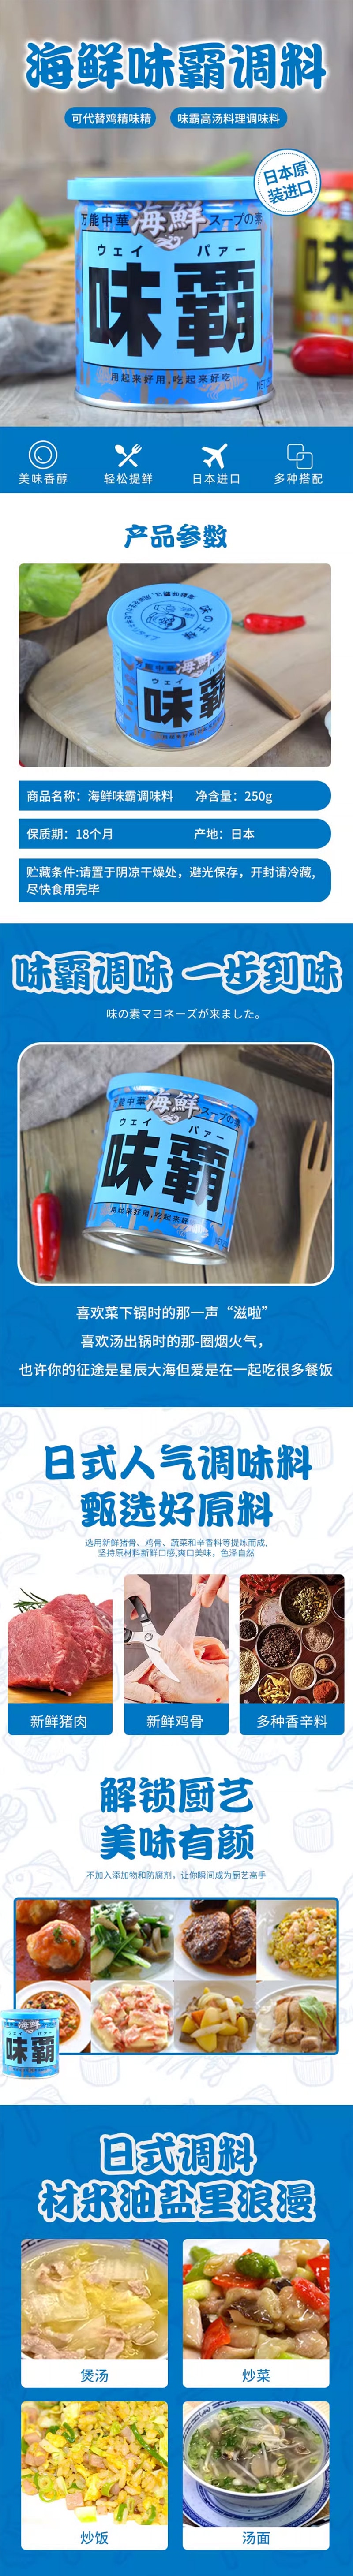 【日本直邮】S&B KOUKISHOKO 广记商行 海鲜味霸 万能汤底调味酱 250g